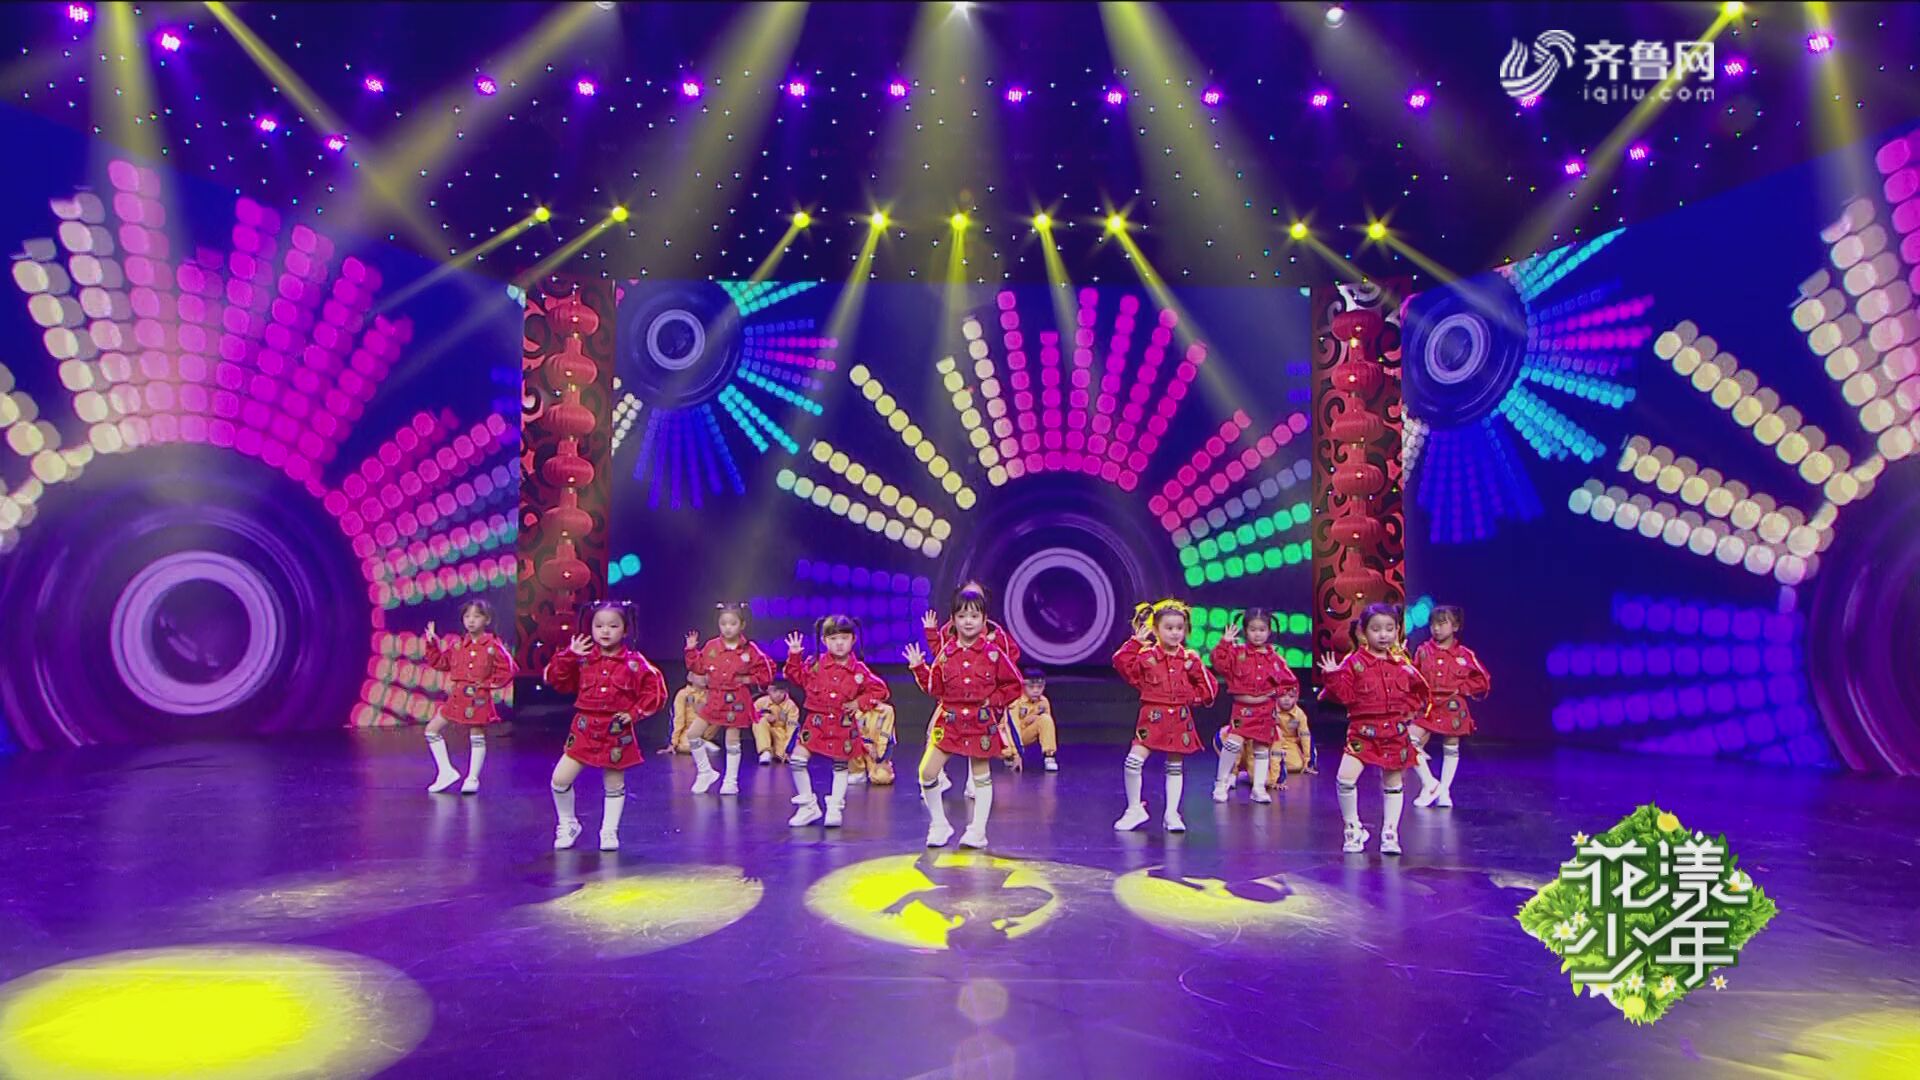 舞蹈《天天向上》——2019山东广播电视台少儿春节大联欢优秀节目展播